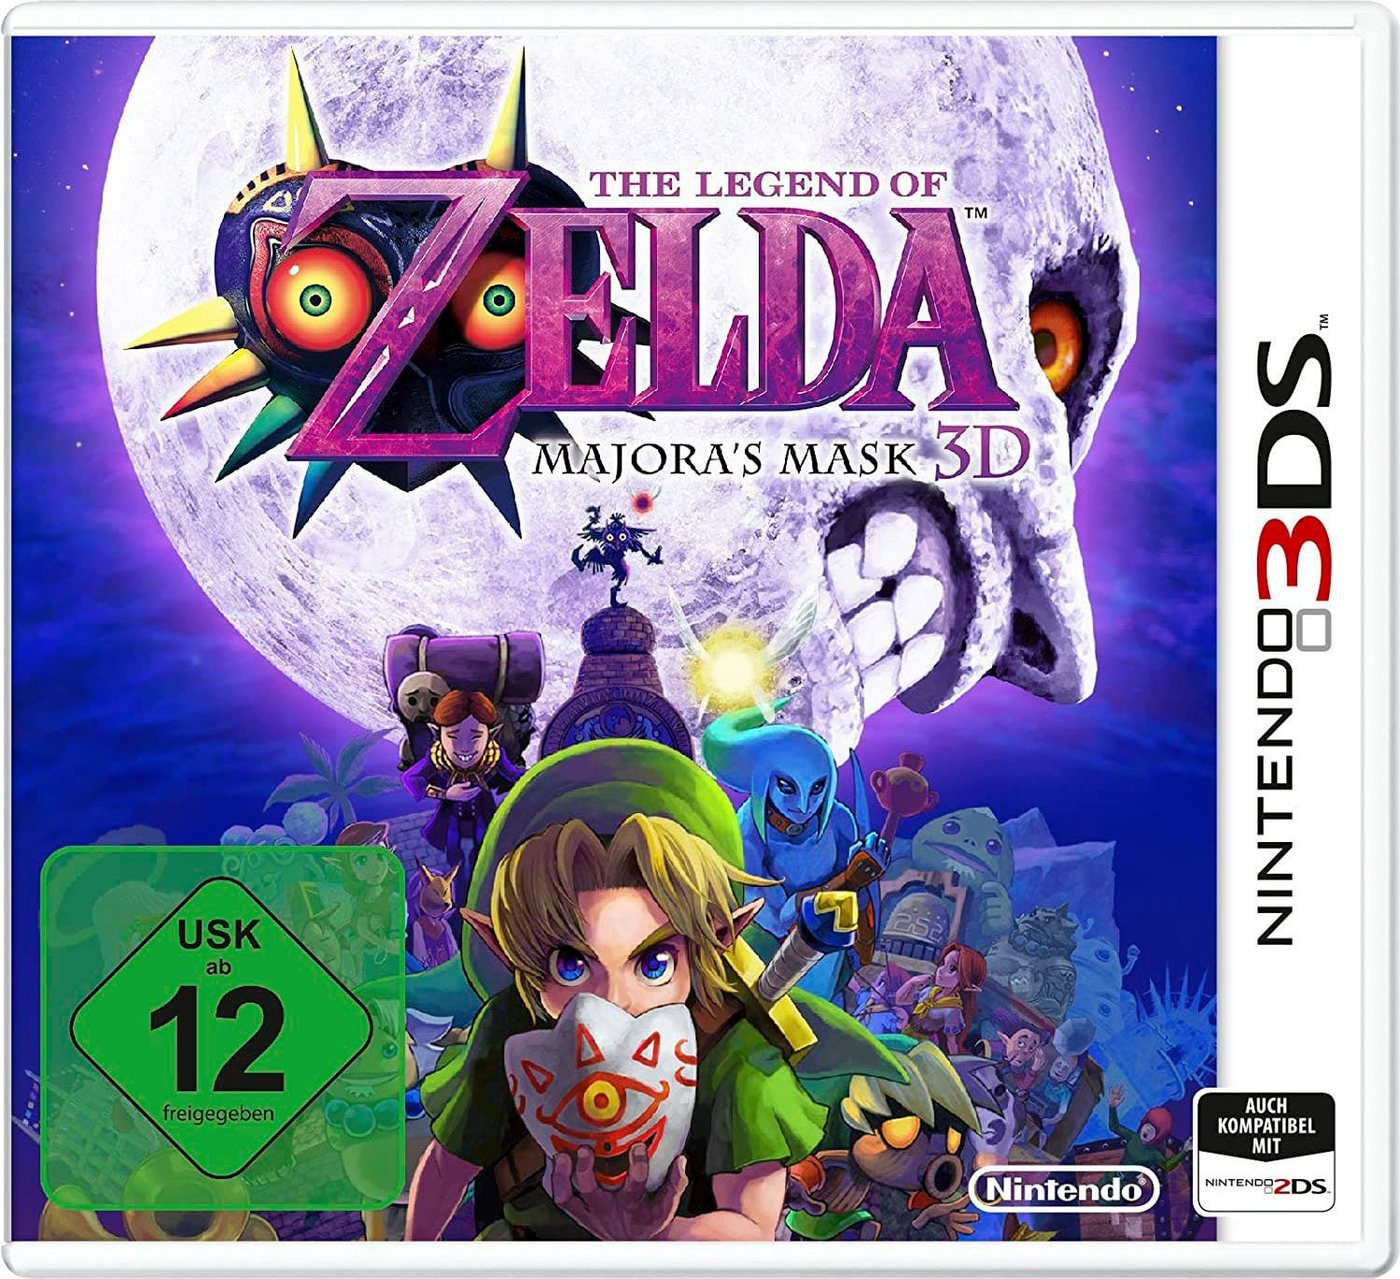 THE LEGEND OF ZELDA: MAJORA'S MASK 3D Nintendo 3DS von Nintendo